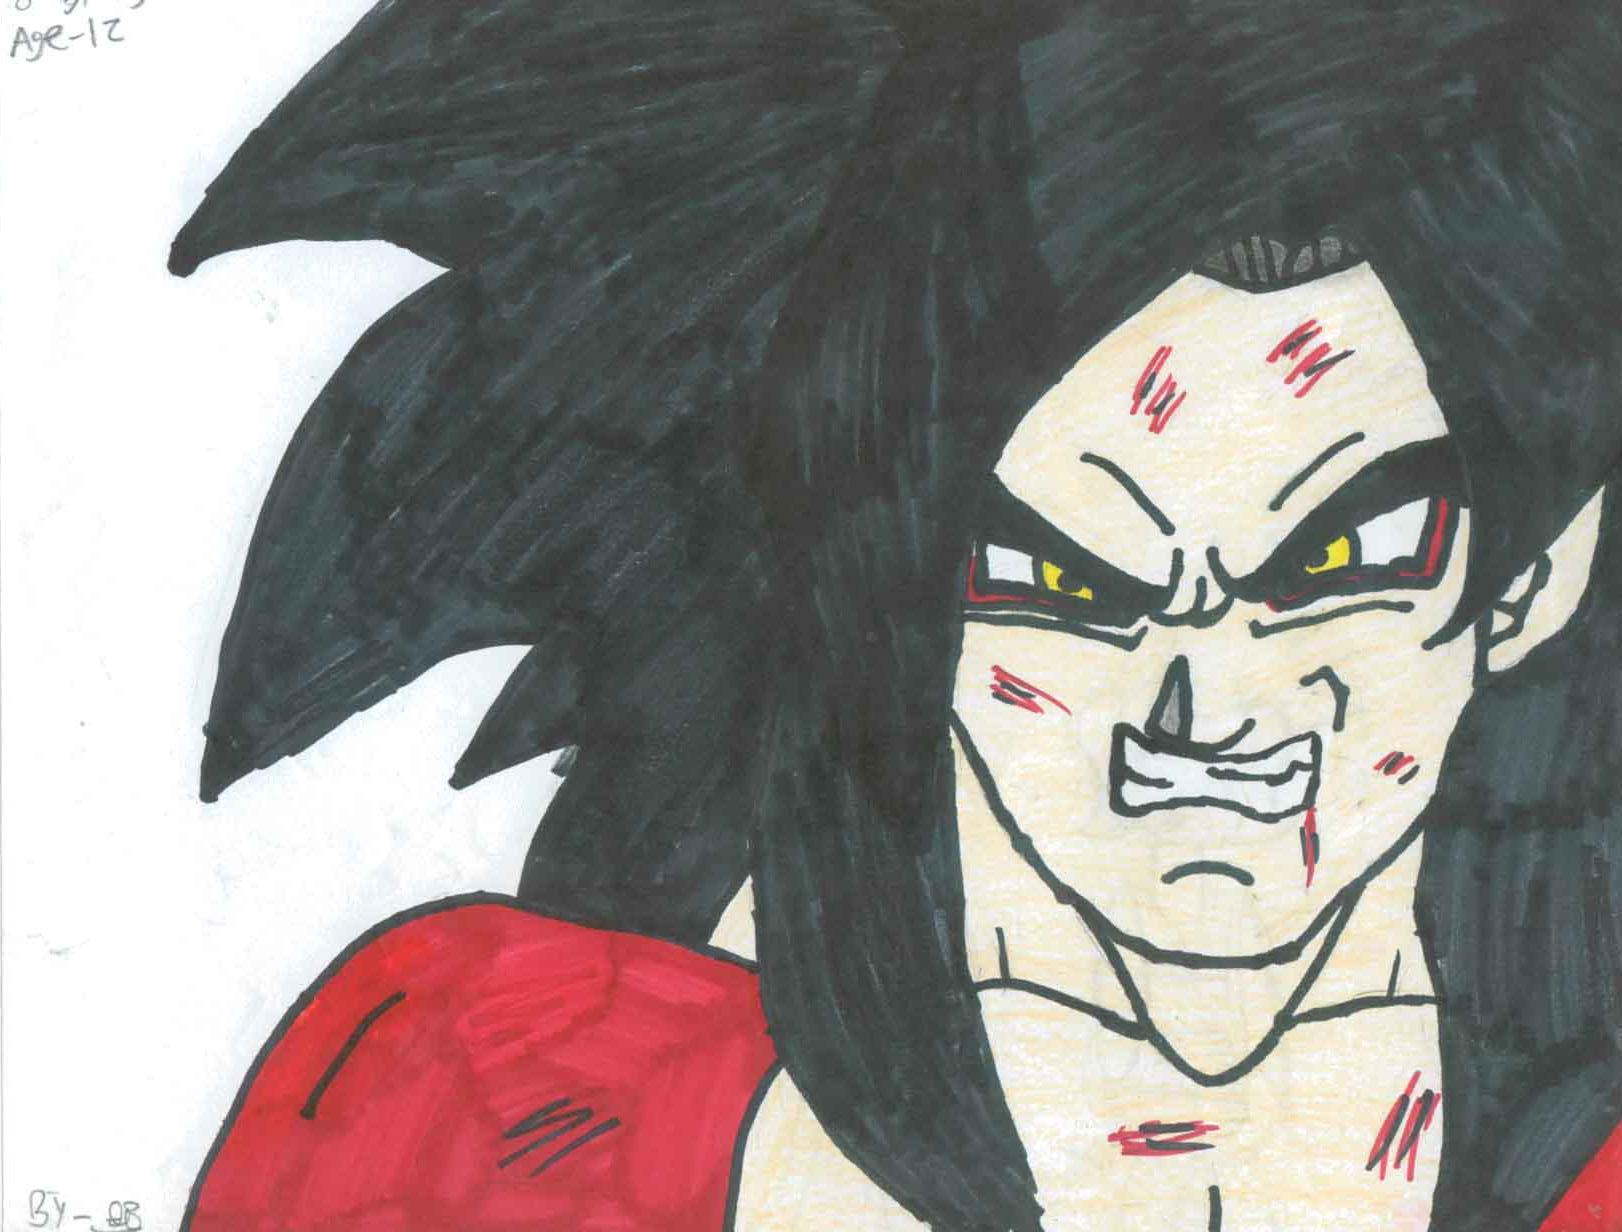 !Super saiyan Goku 4! by SSGoshin4